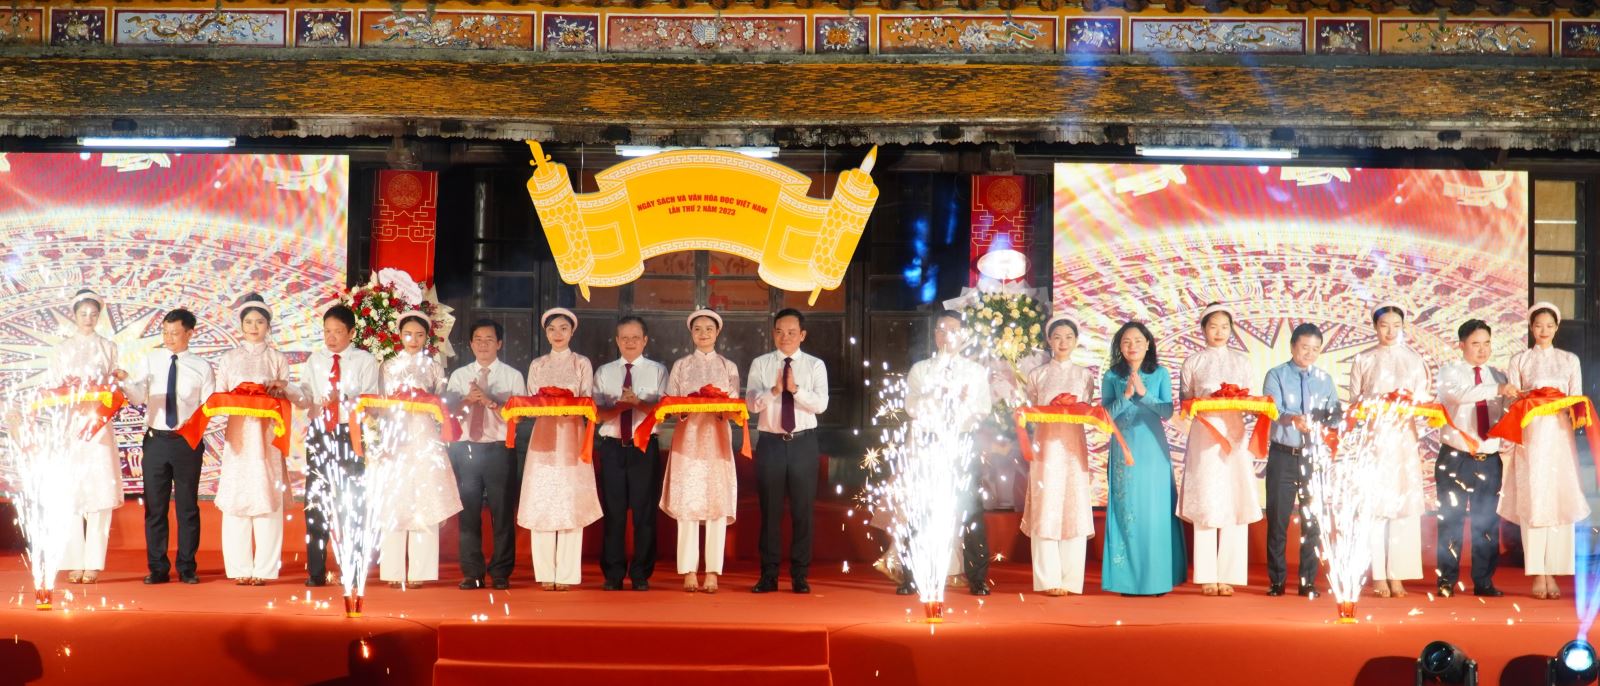 Khai mạc Ngày sách và Văn hóa đọc Việt Nam lần thứ 2 năm 2023 tại Huế.